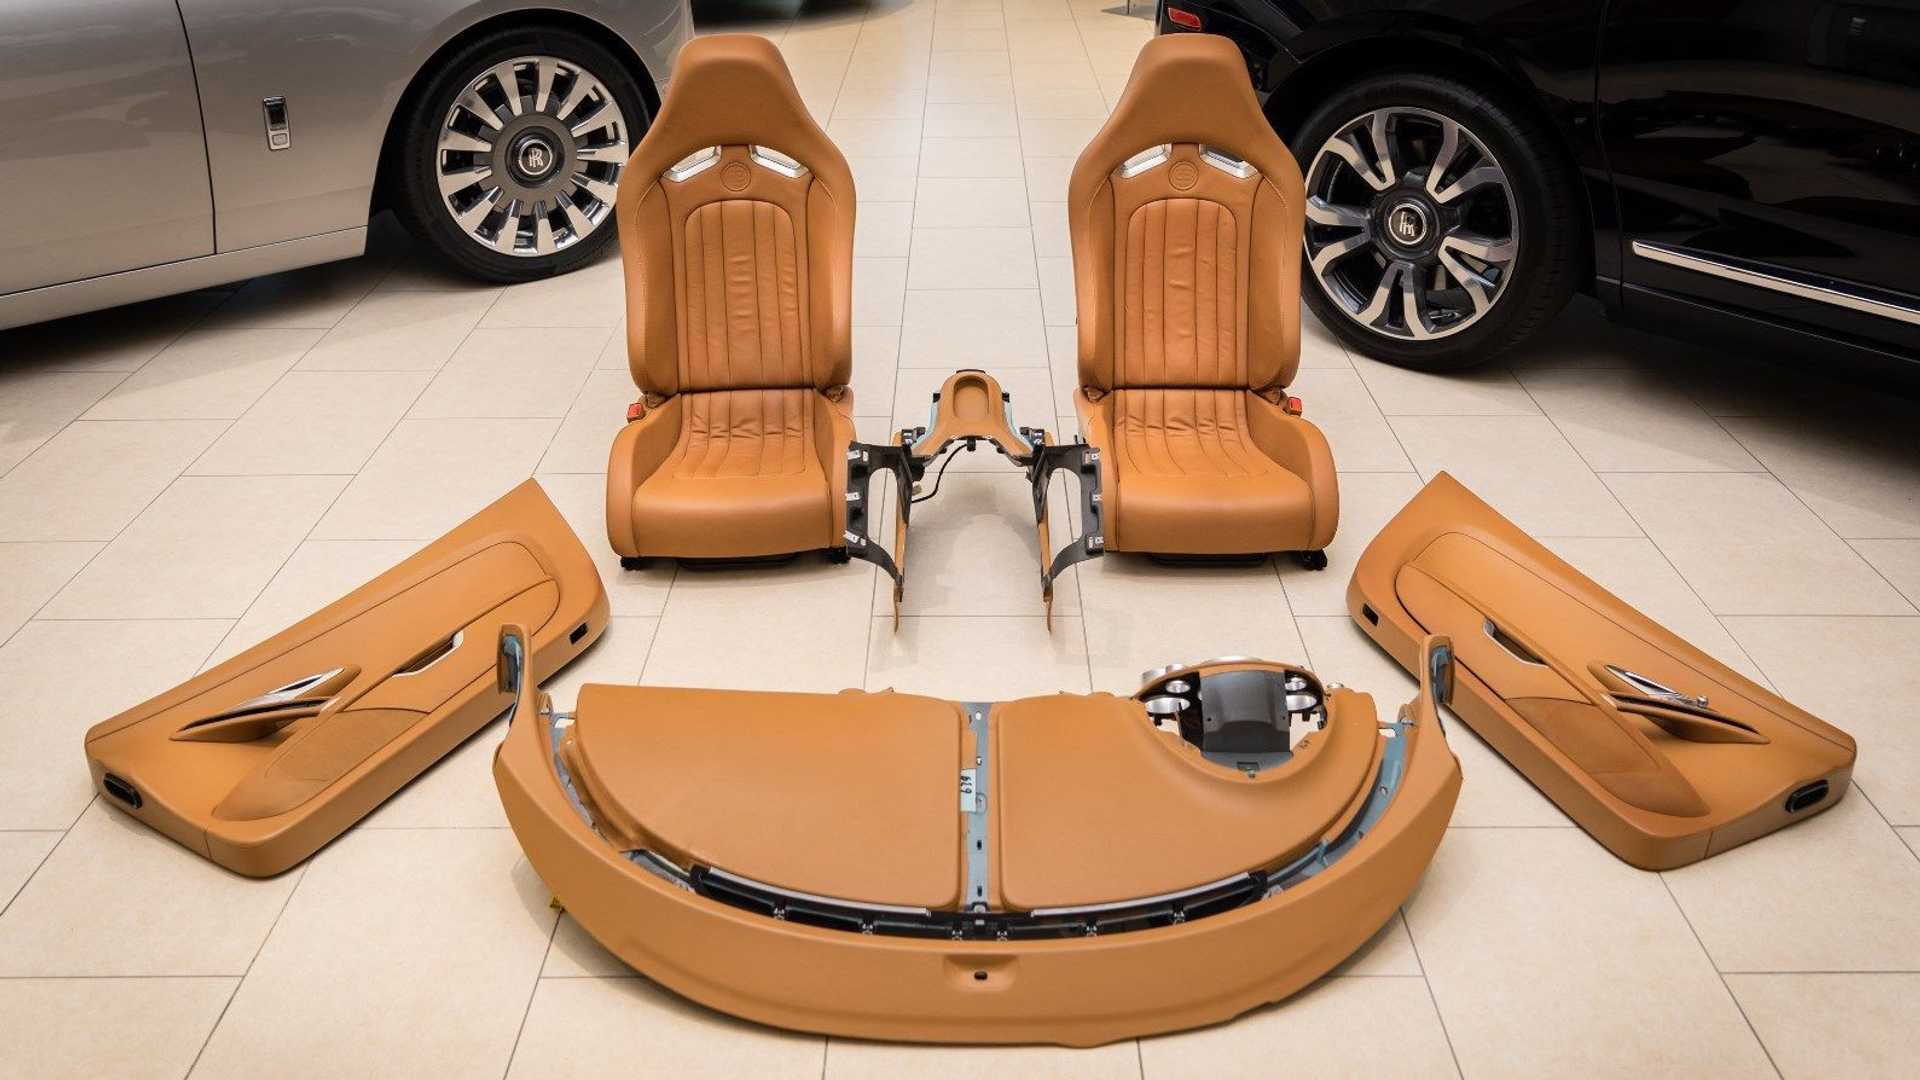 Uensartet Oversætte vinter $150,000 buys a Bugatti Veyron's complete interior